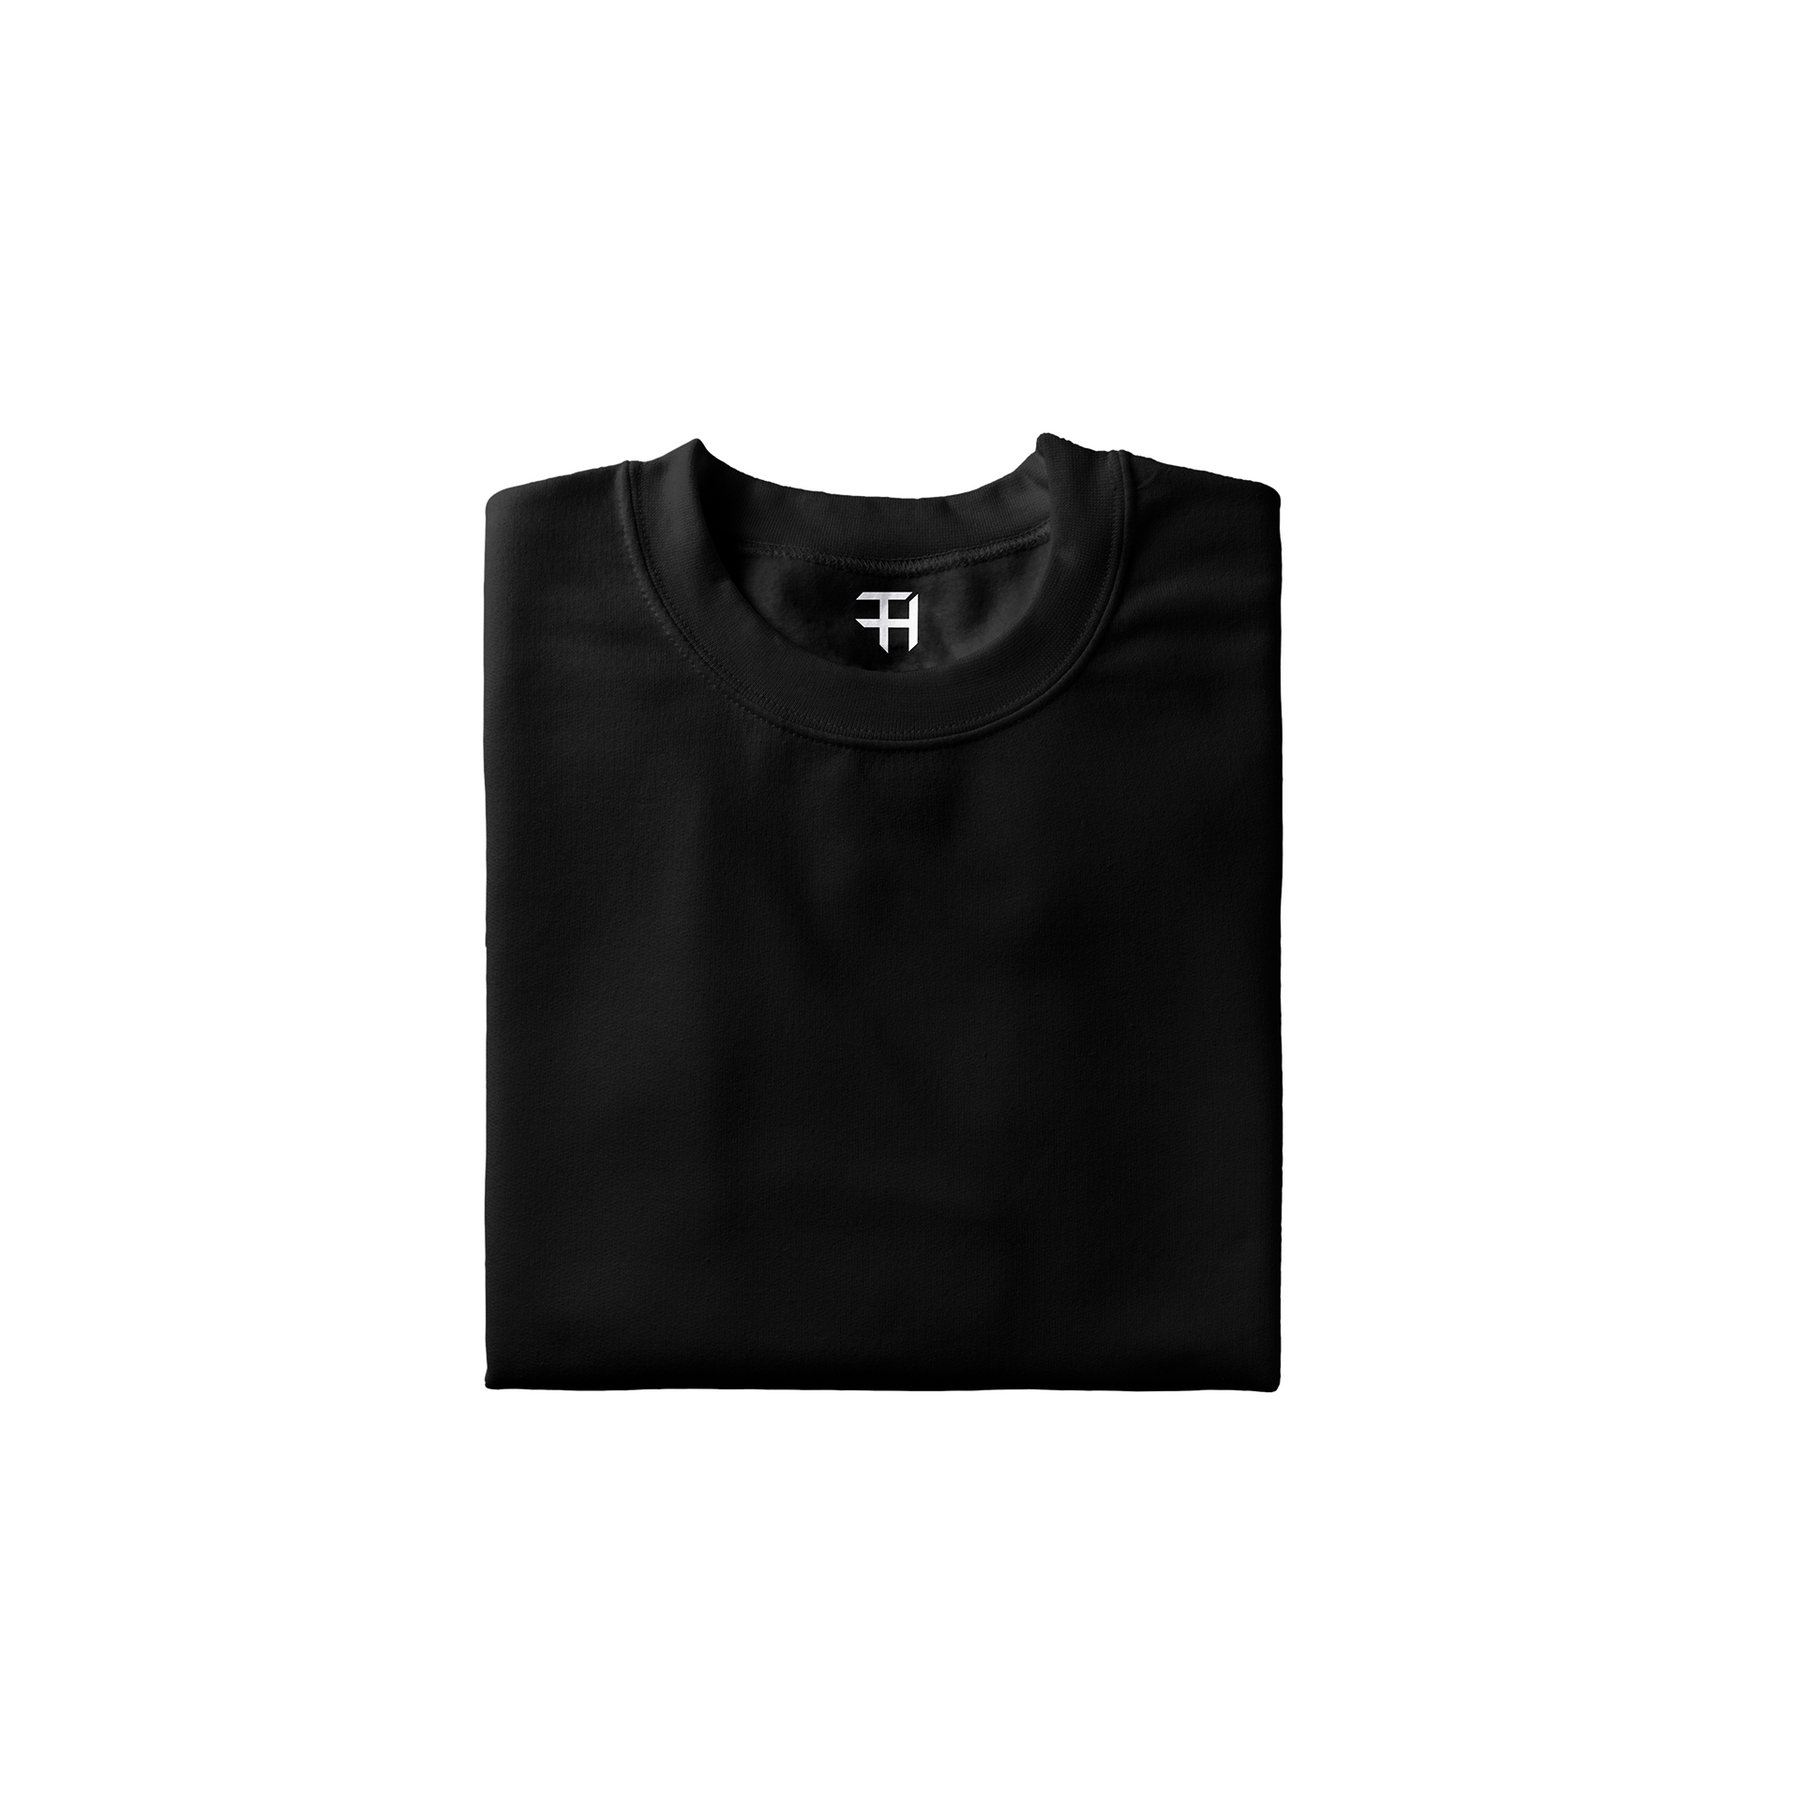 Teeshood Black Unisex T-shirt